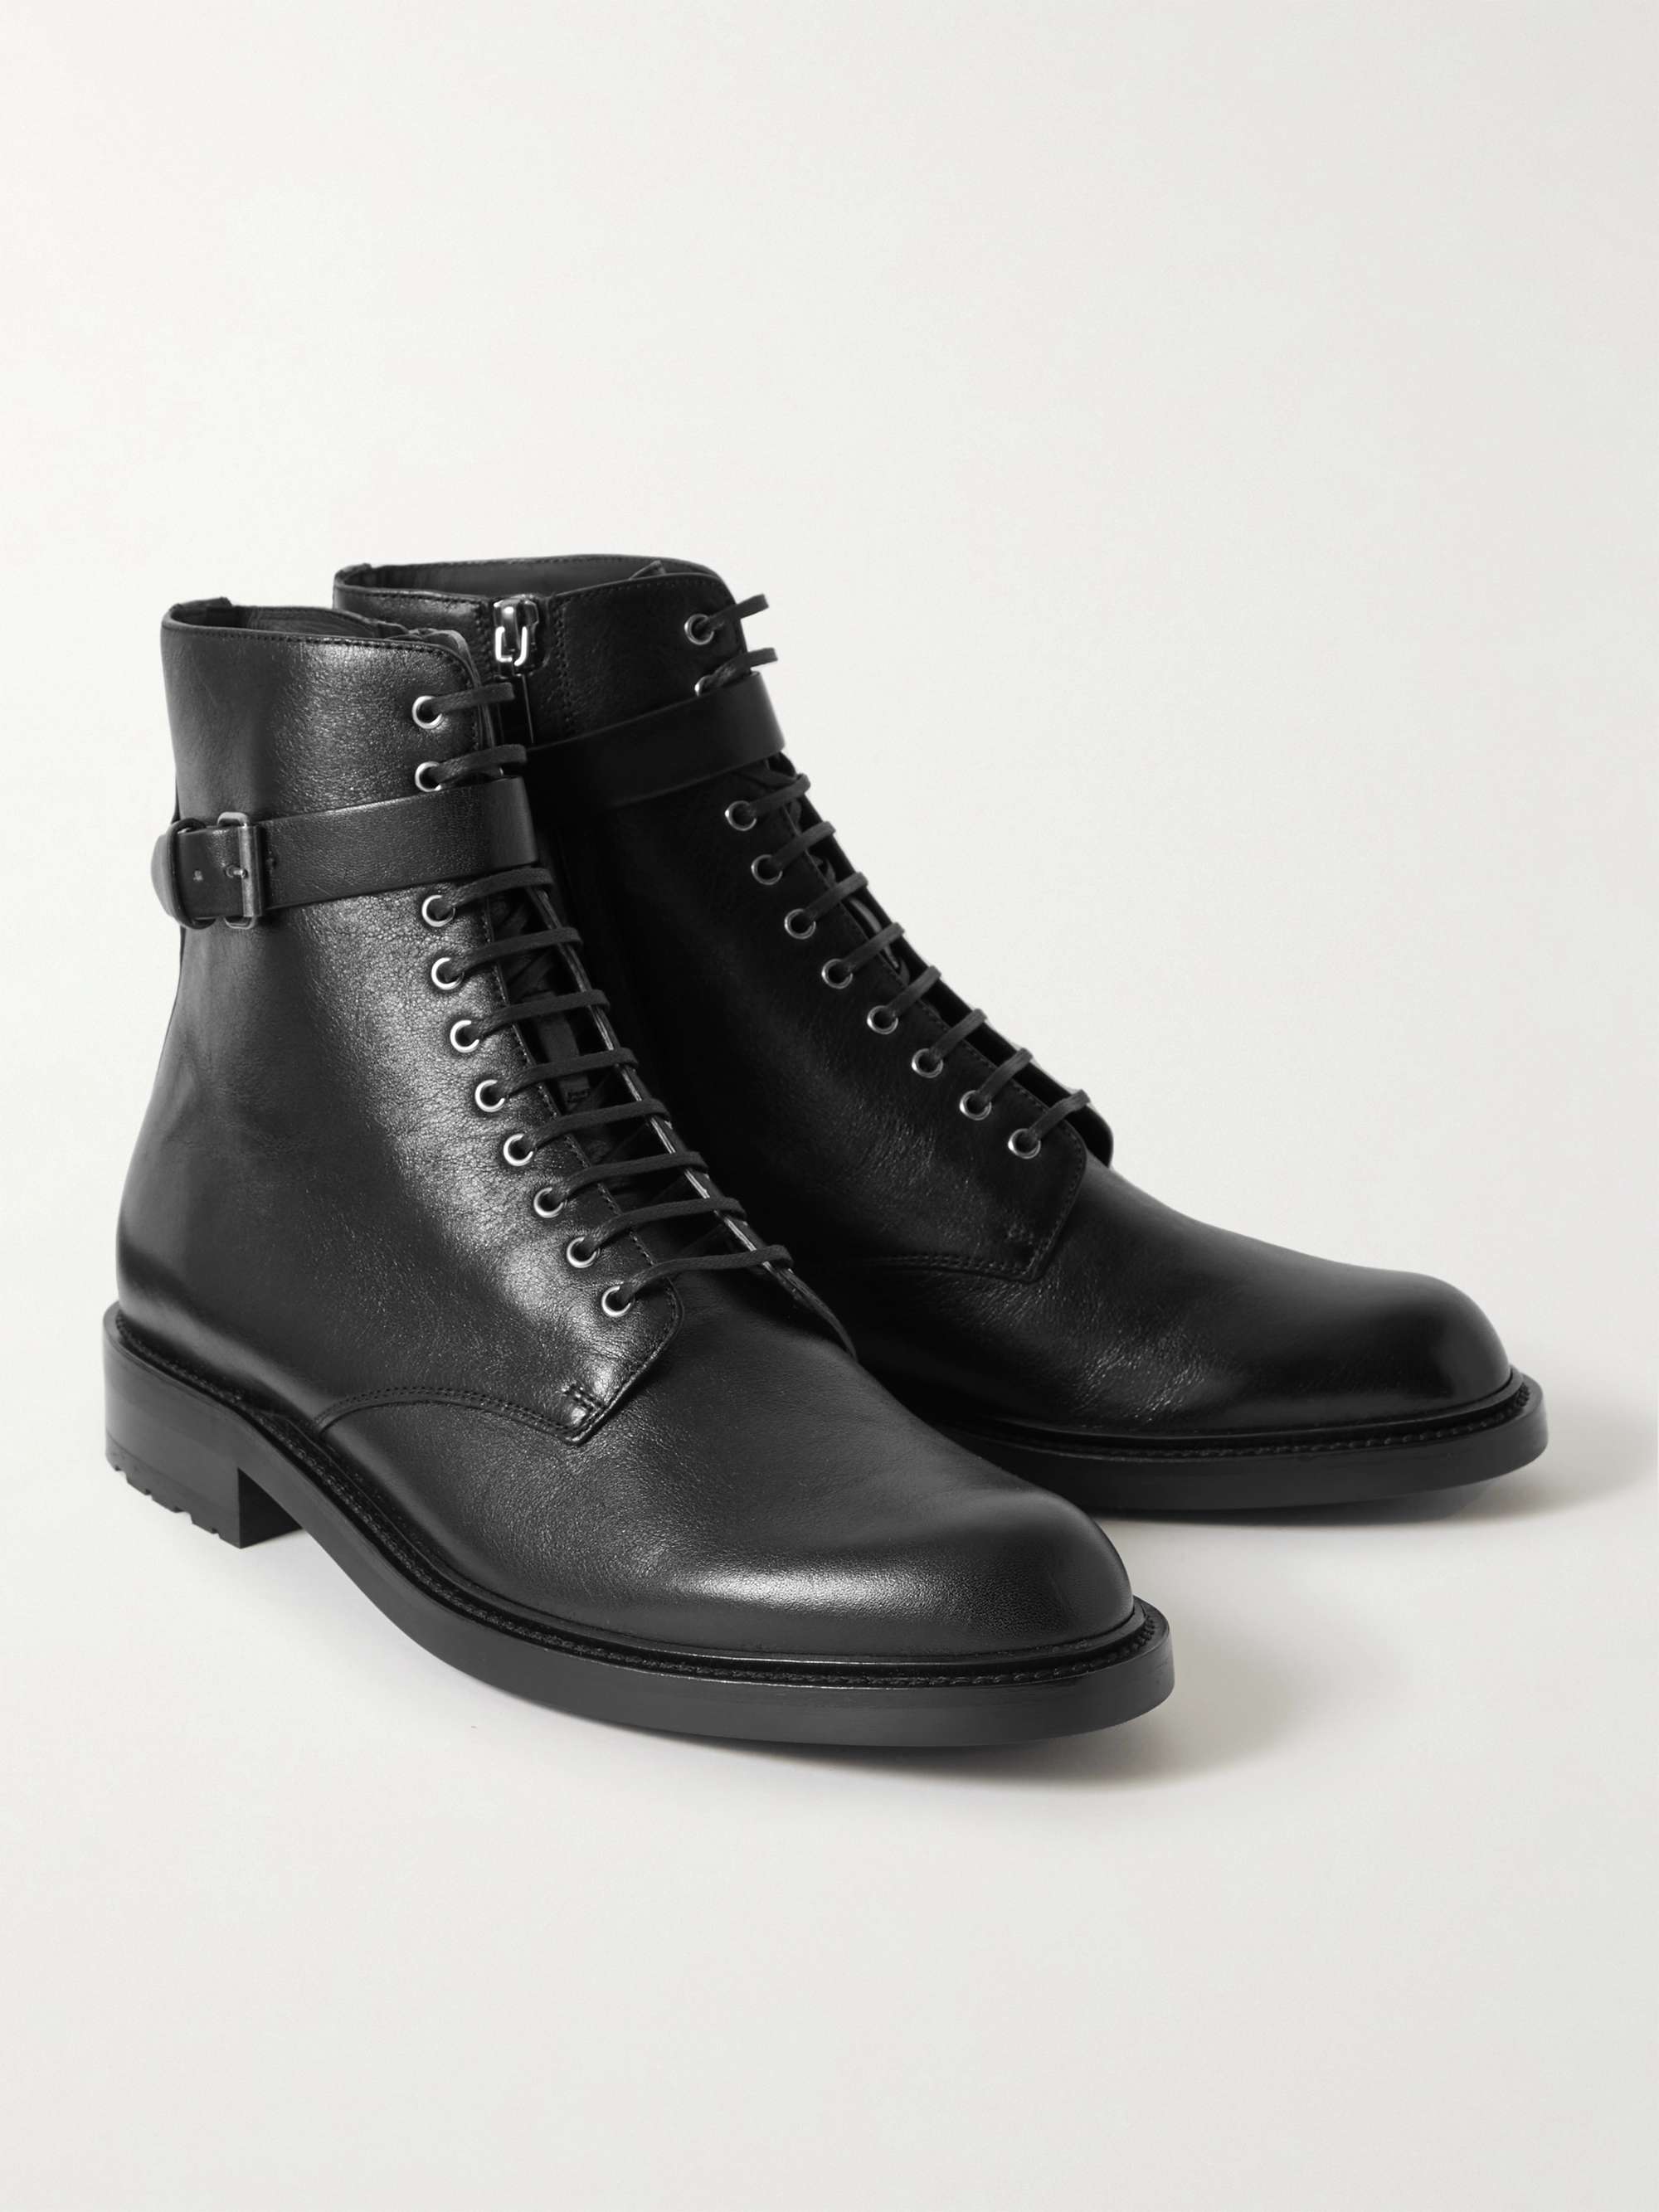 SAINT LAURENT Leather Boots | MR PORTER